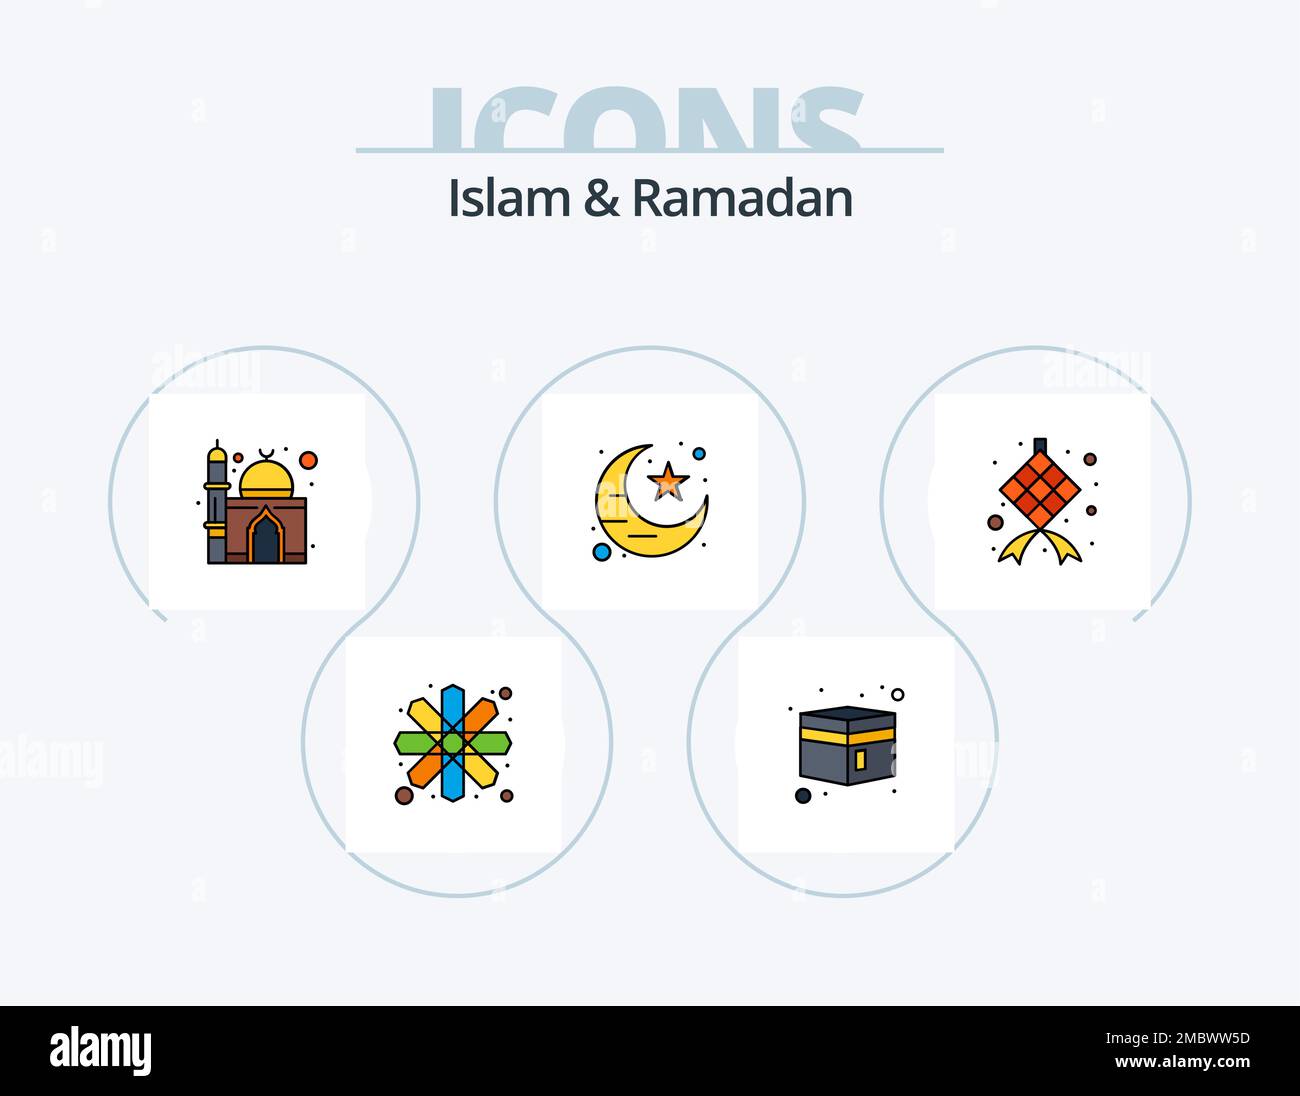 Muslim Stuff - Numéro 1 sur la décoration islamique